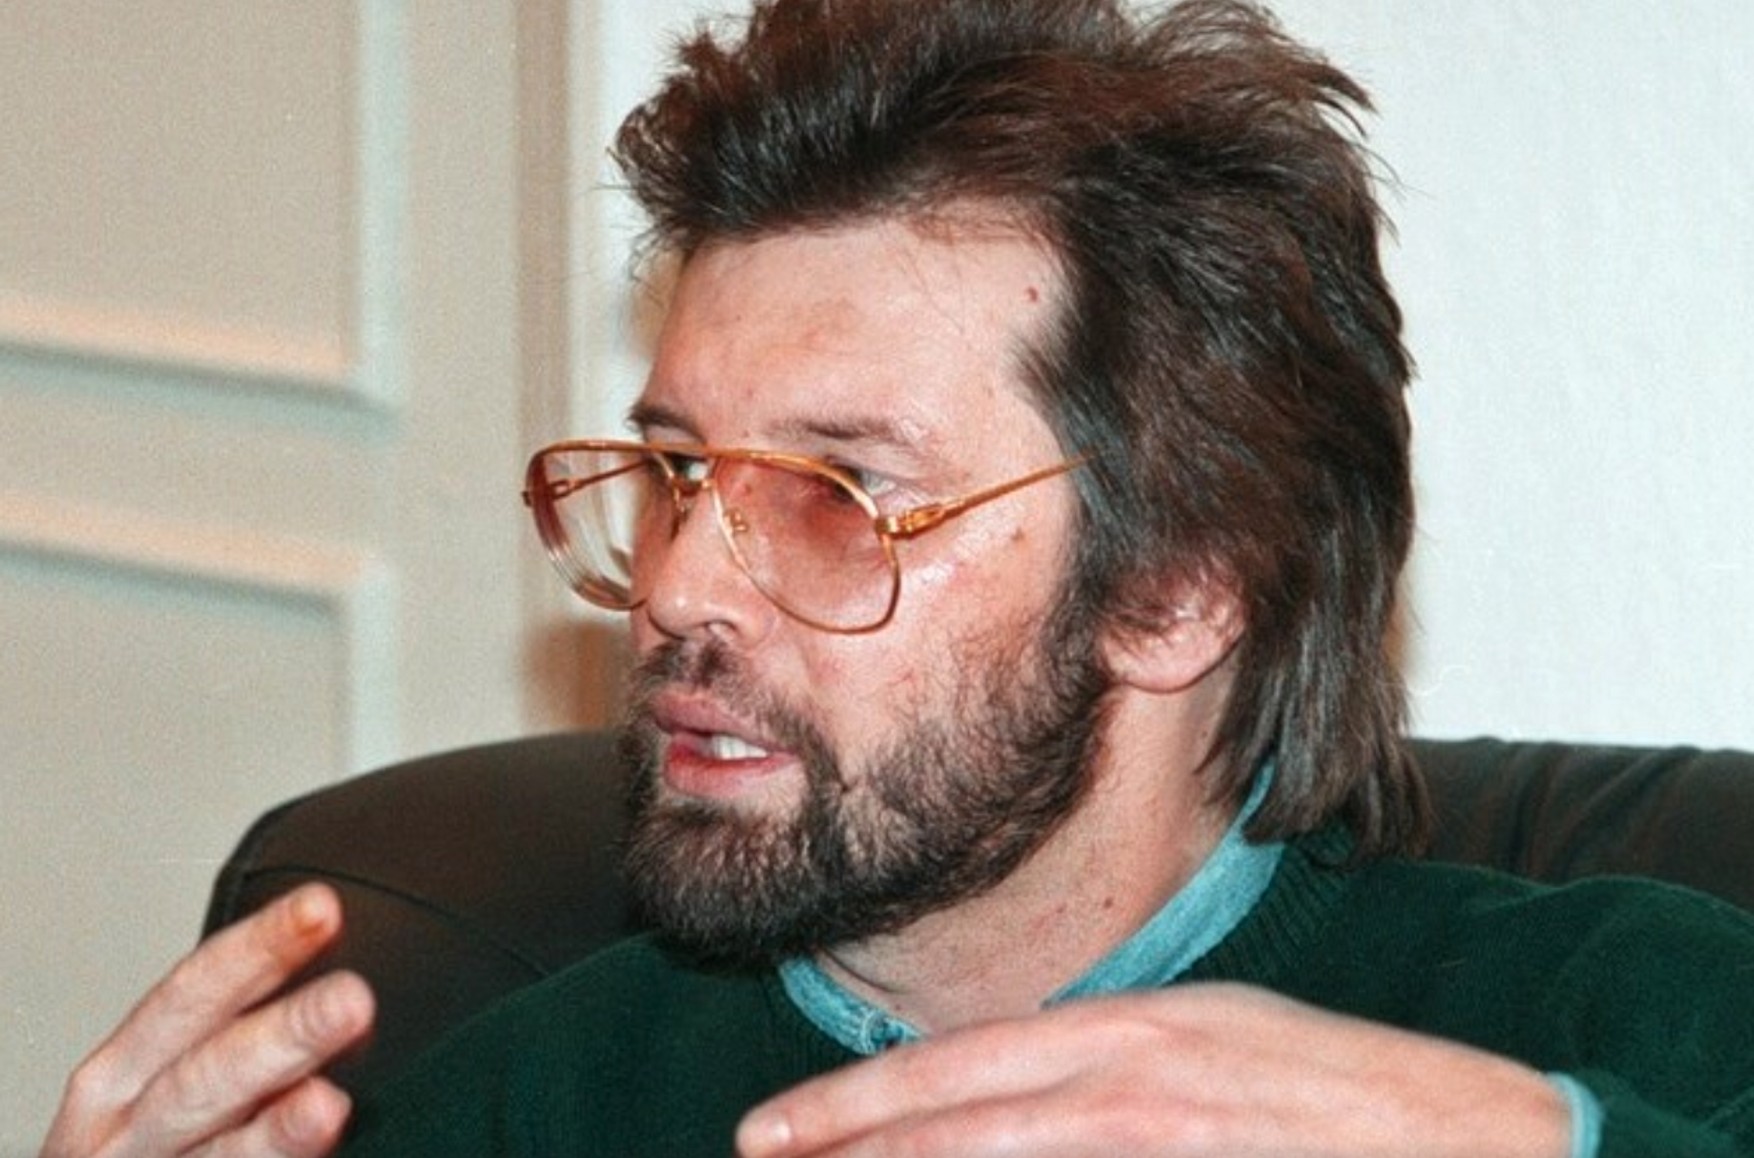 Пропавший в 1997 году депутат Госдумы Марк Горячев был расчленен в Петербурге, это выяснили спустя 25 лет